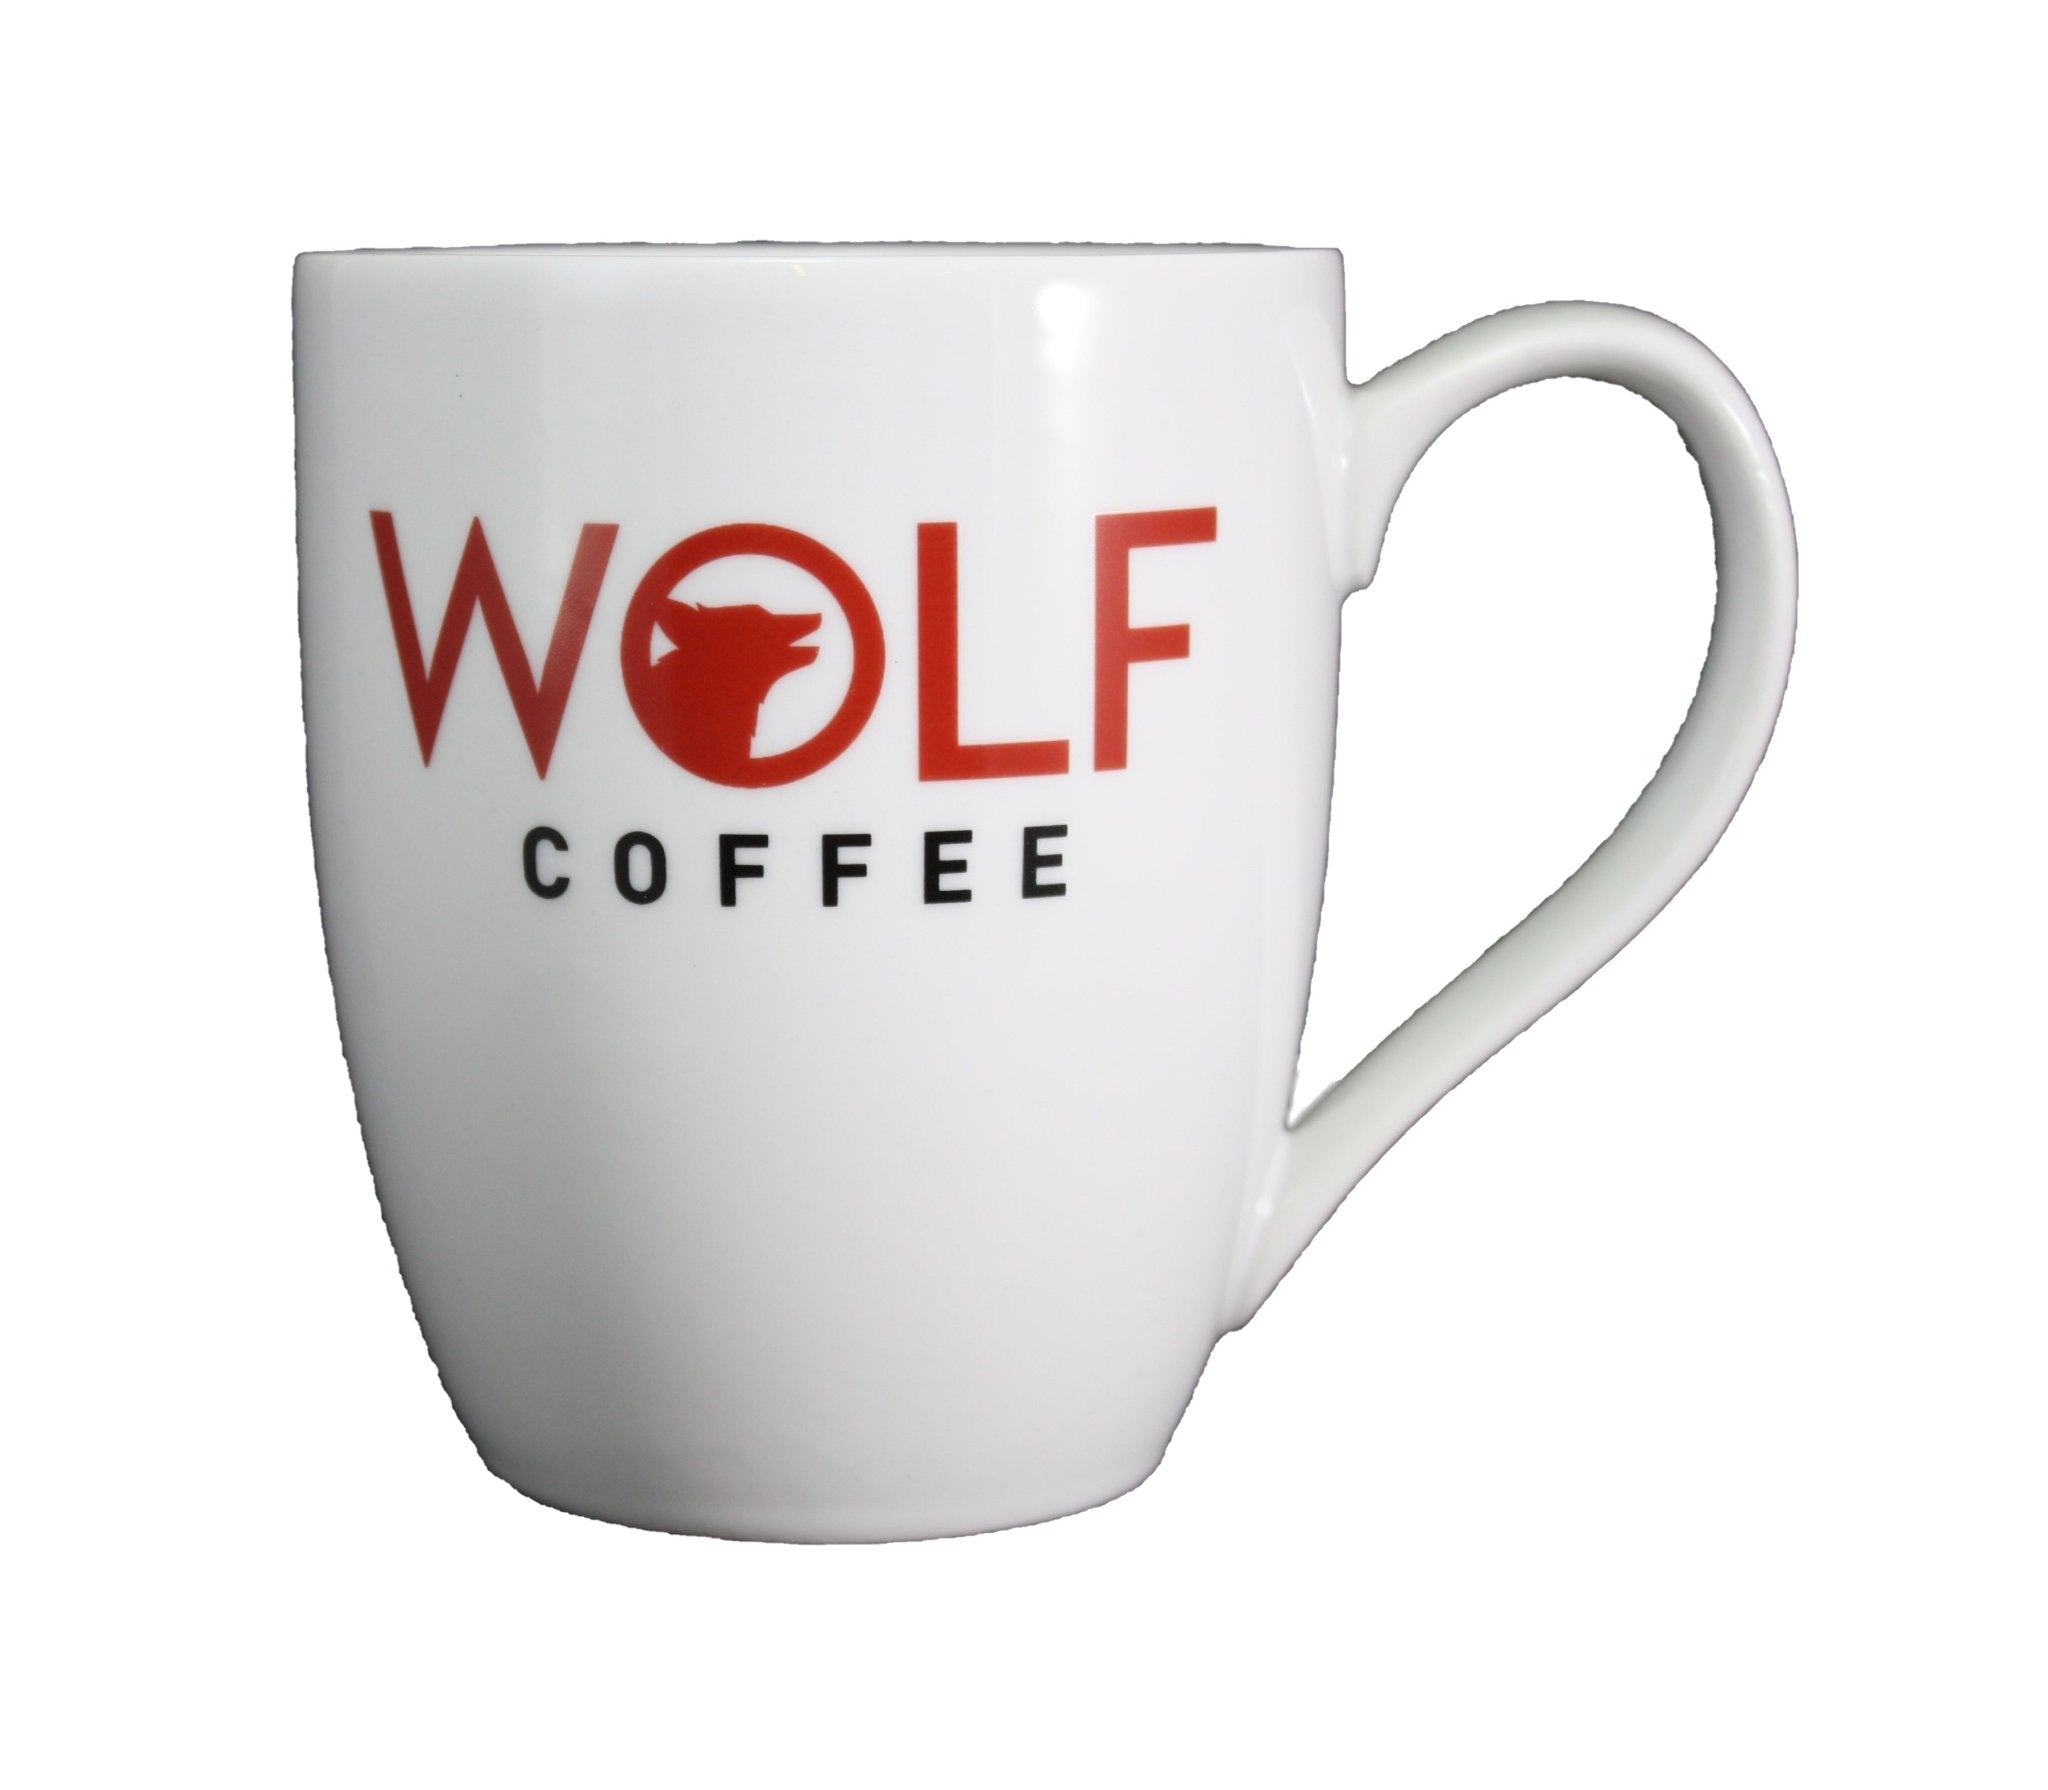 https://www.wolfcoffee.com/cdn/shop/products/16-oz-wolf-coffee-mug-684919_2048x.jpg?v=1698433495